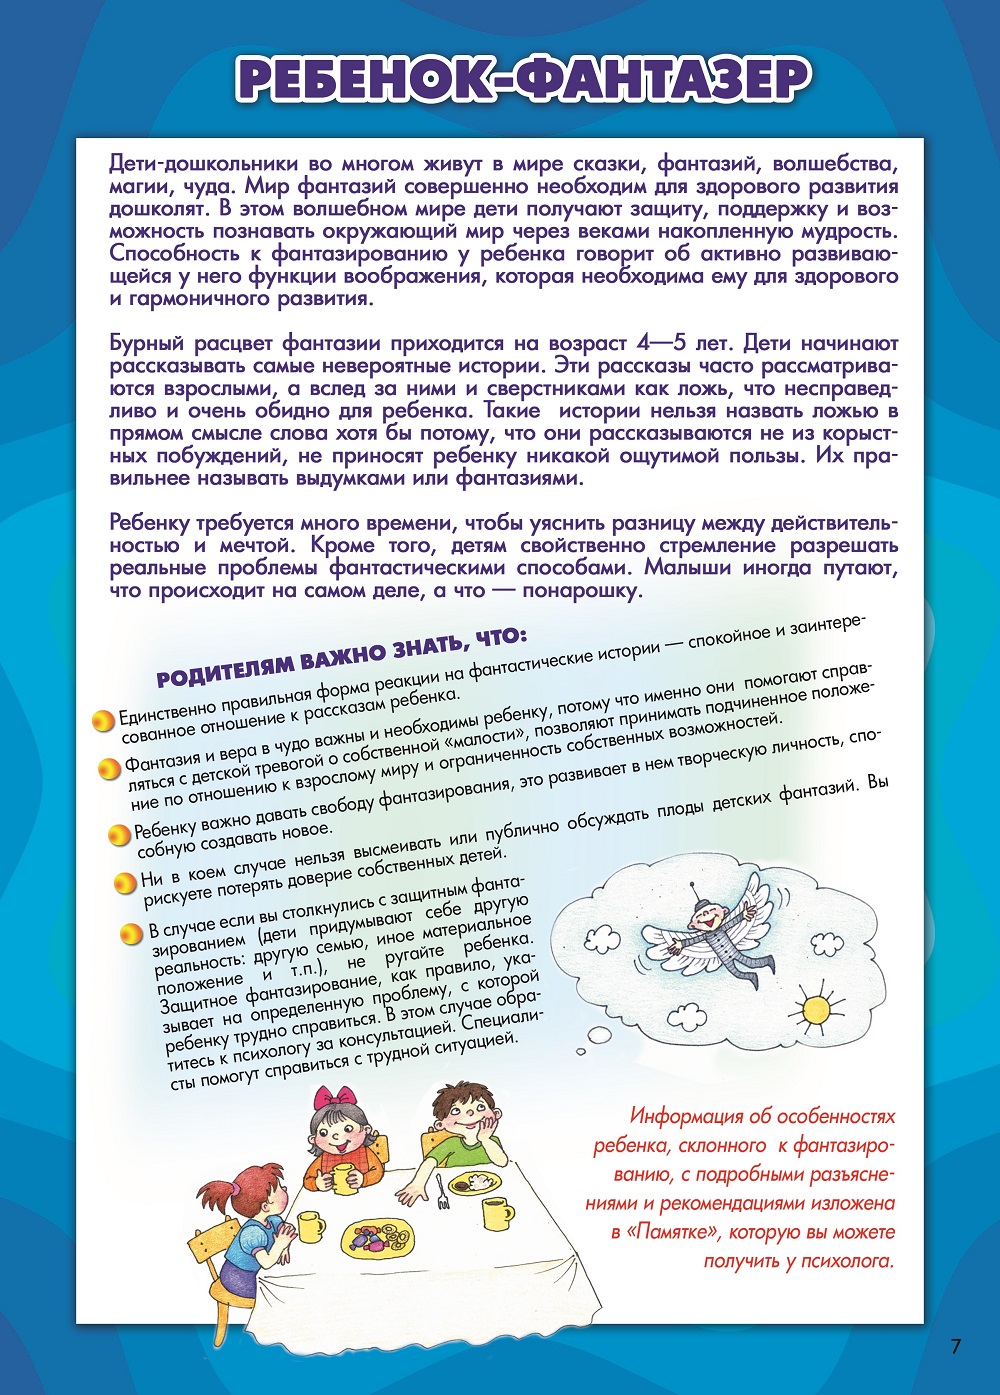 Консультирование родителей в детском саду: индивидуальные особенности детей. Практические материалы для психологов детских дошкольных учреждений (формат А4)